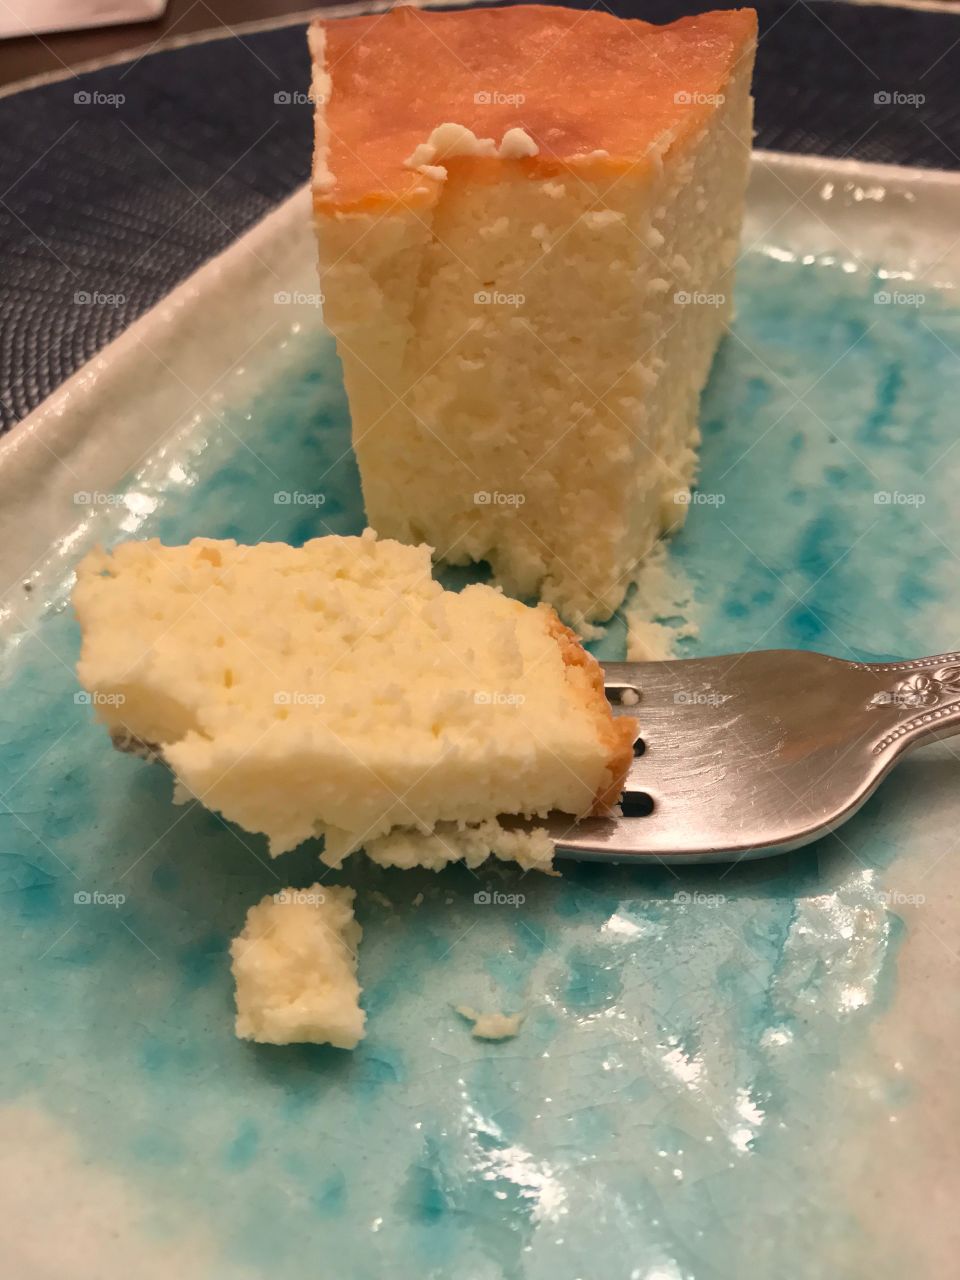 Bite of cheesecake 